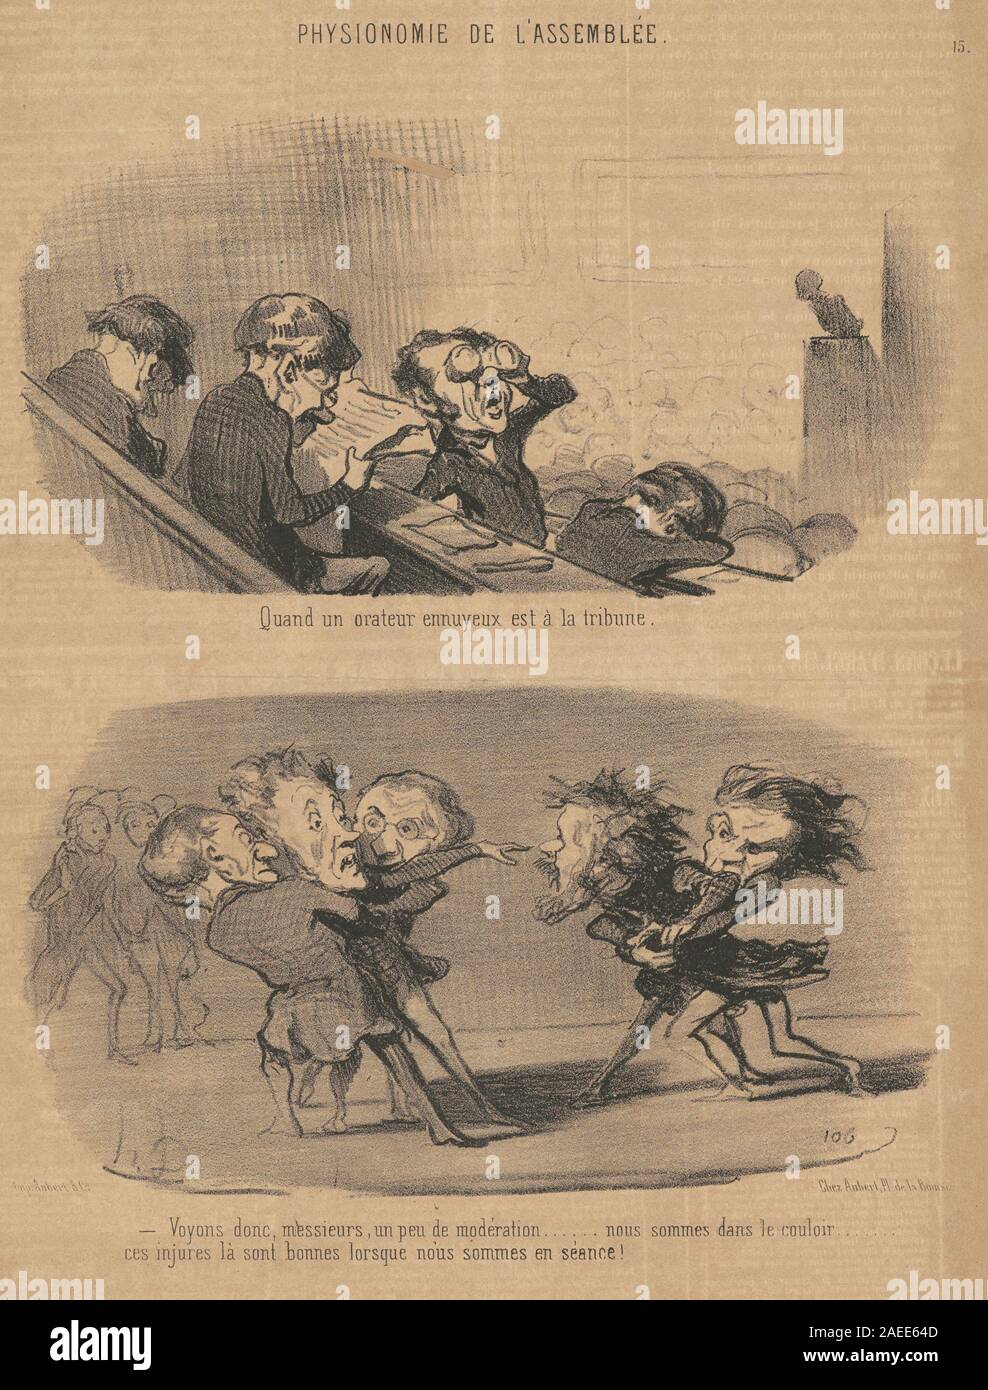 Honoré Daumier, Quand un orateur ennuyeux est a la tribune, 19th century Quand un orateur ennuyeux est a la tribune; 19th century date Stock Photo